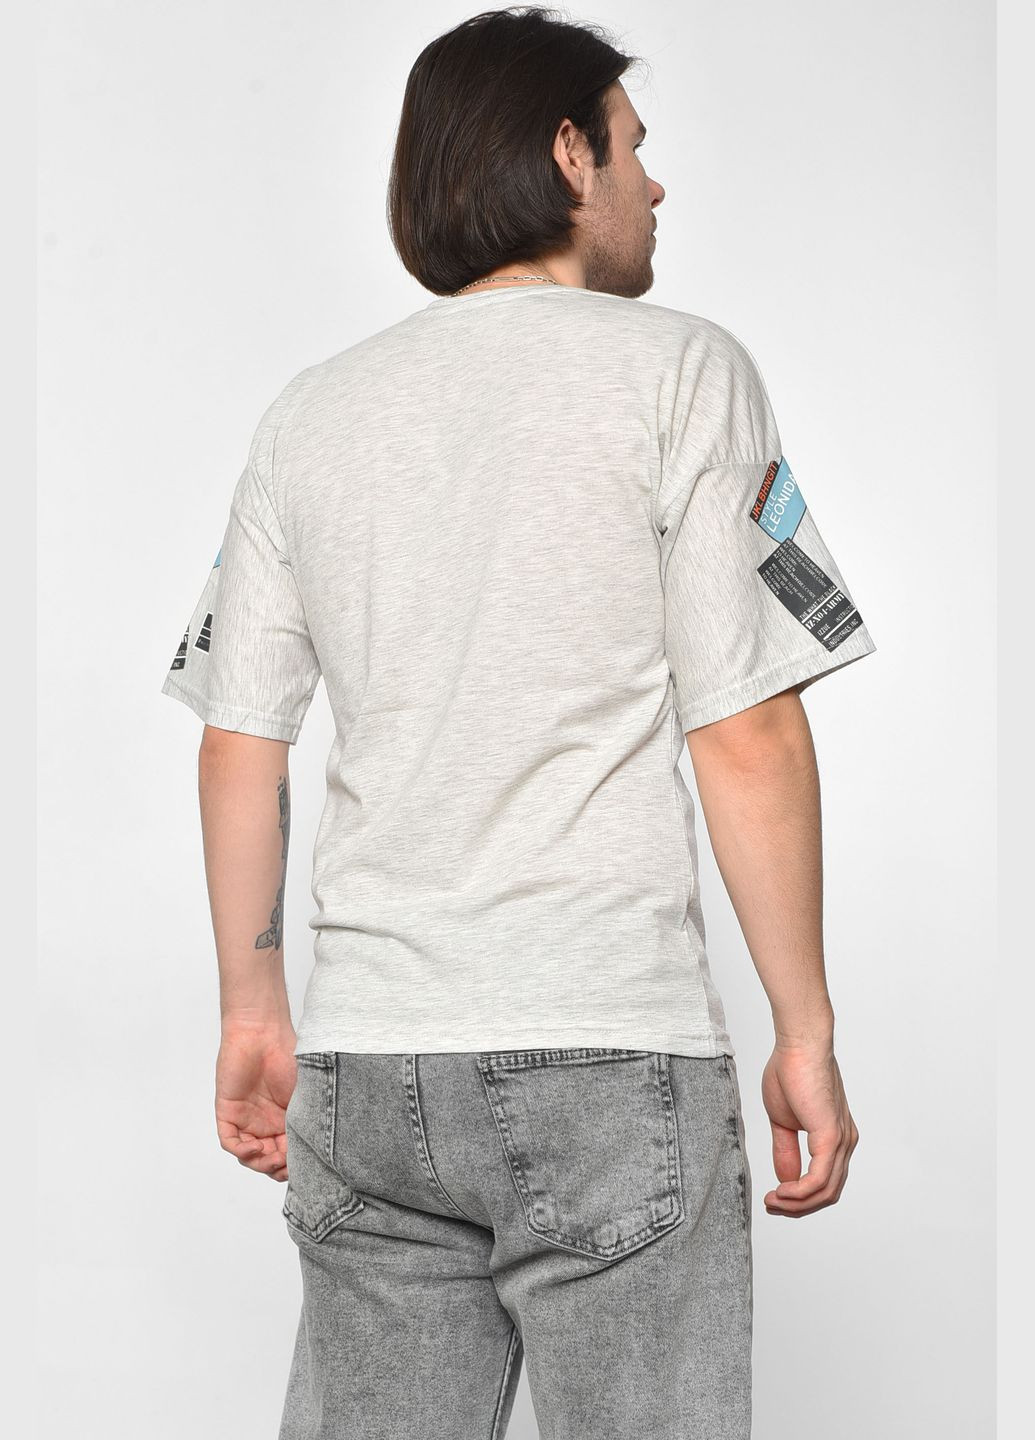 Сіра футболка чоловіча напівбатальна сірого кольору Let's Shop